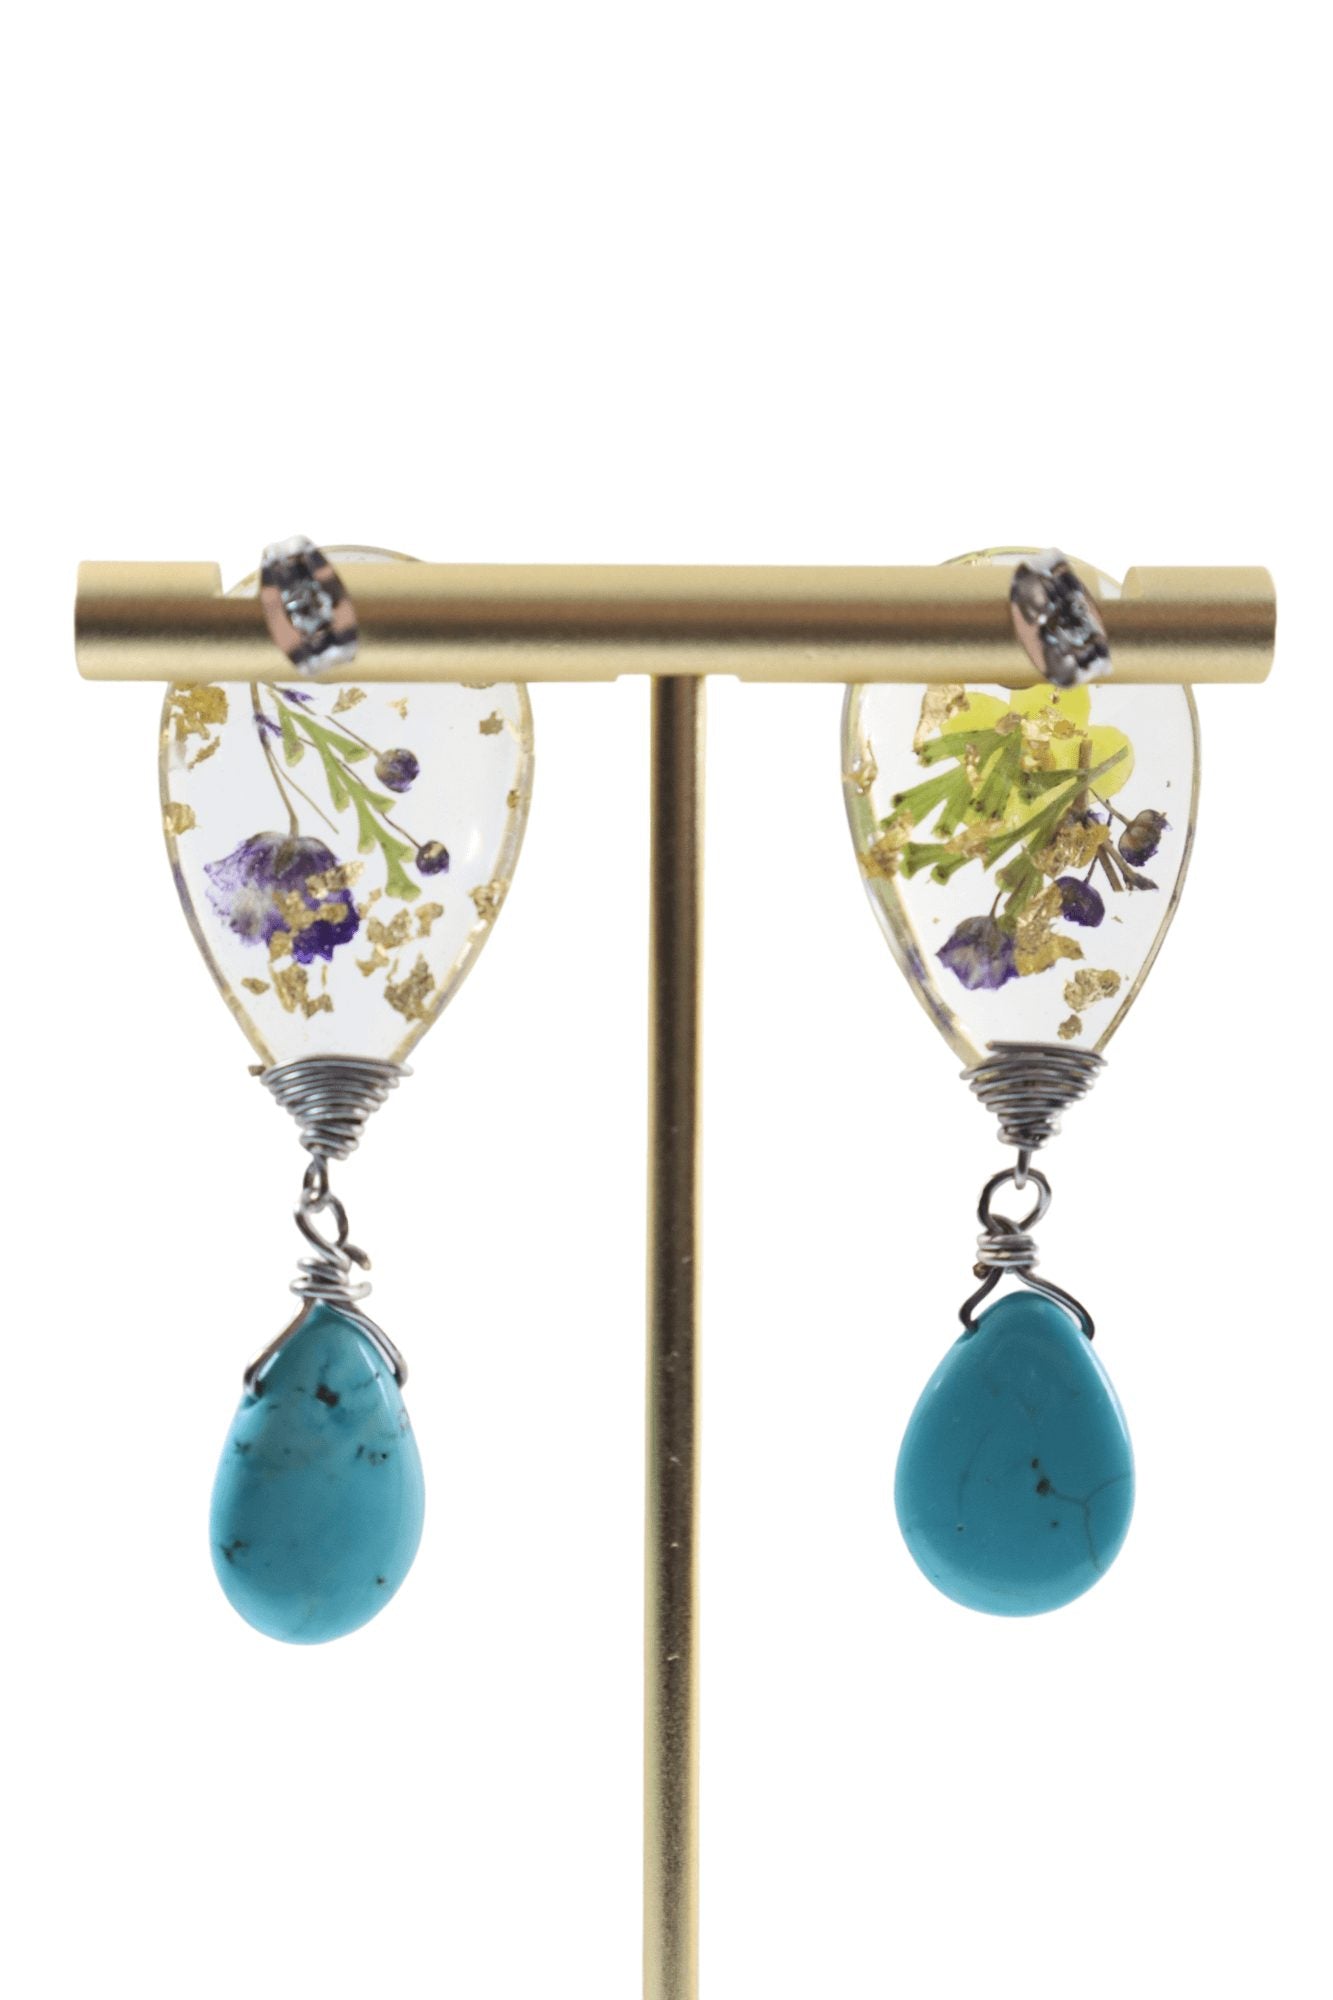 Garden-jewelry---real-flower-jewelry---flower-jewelry---Kaleidoscopes-And-Polka-Dots